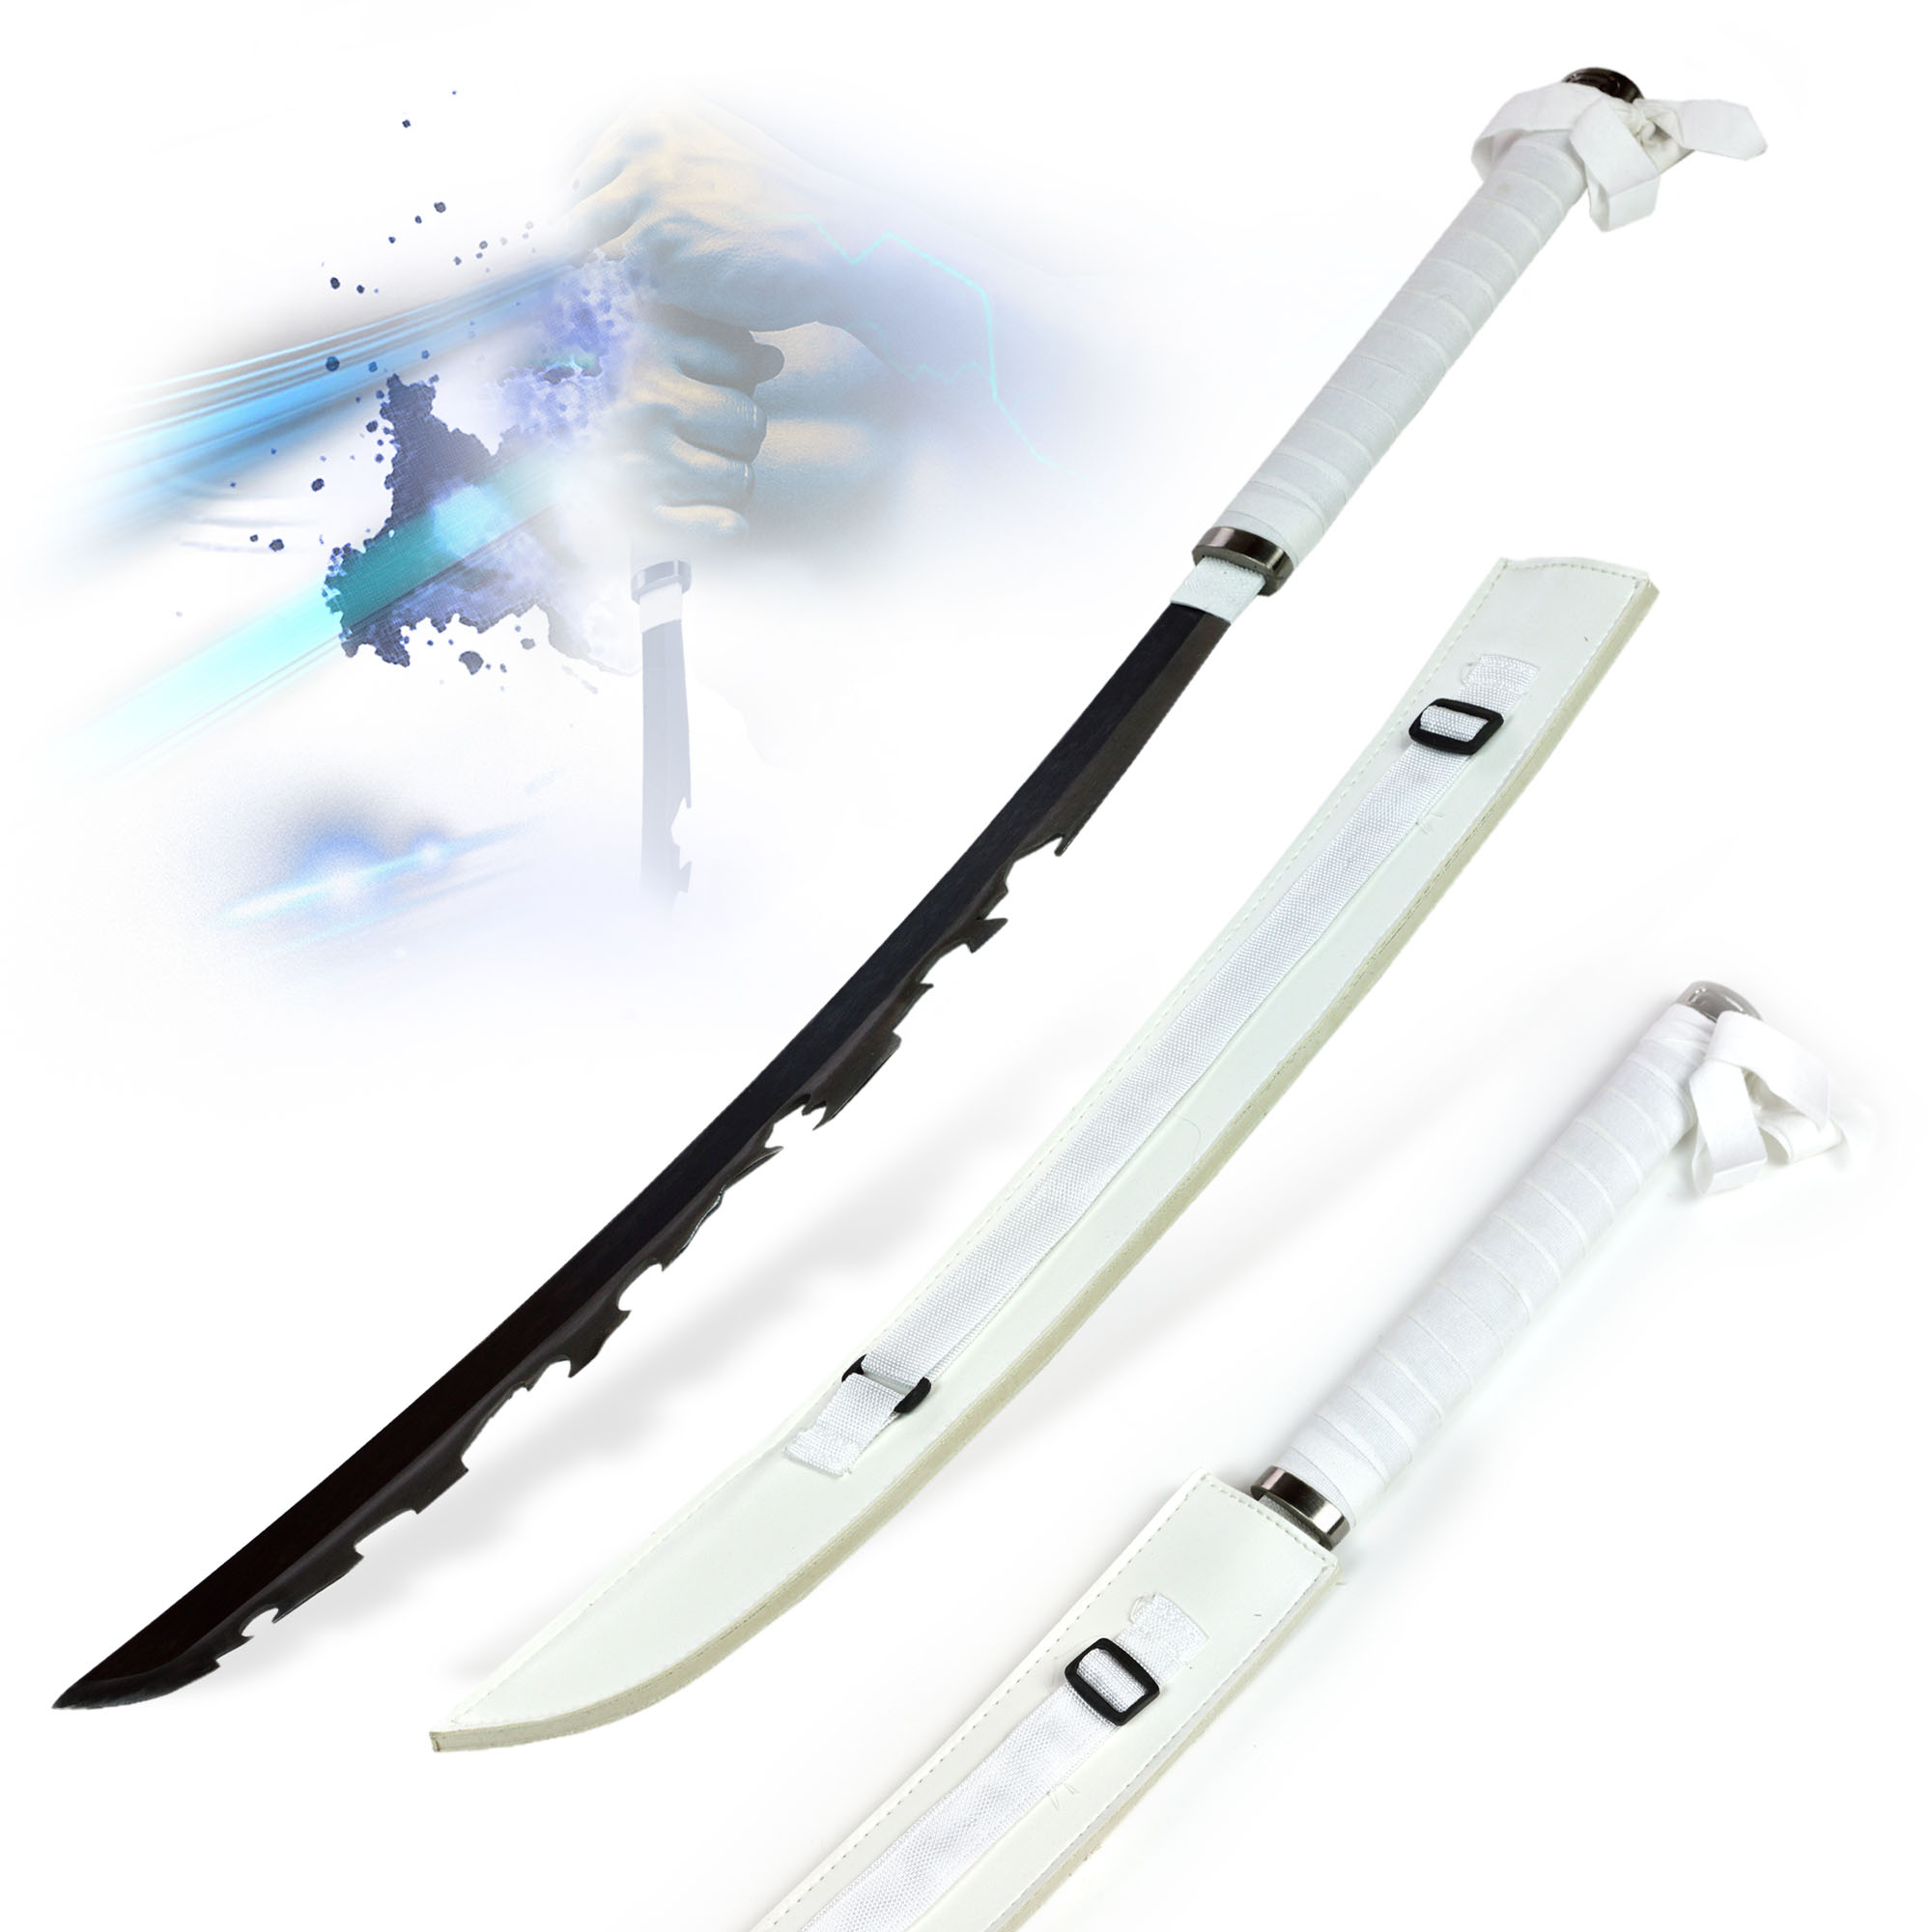 Demon Slayer: Kimetsu no Yaiba - Hashibira Inosuke Schwert mit Scheide